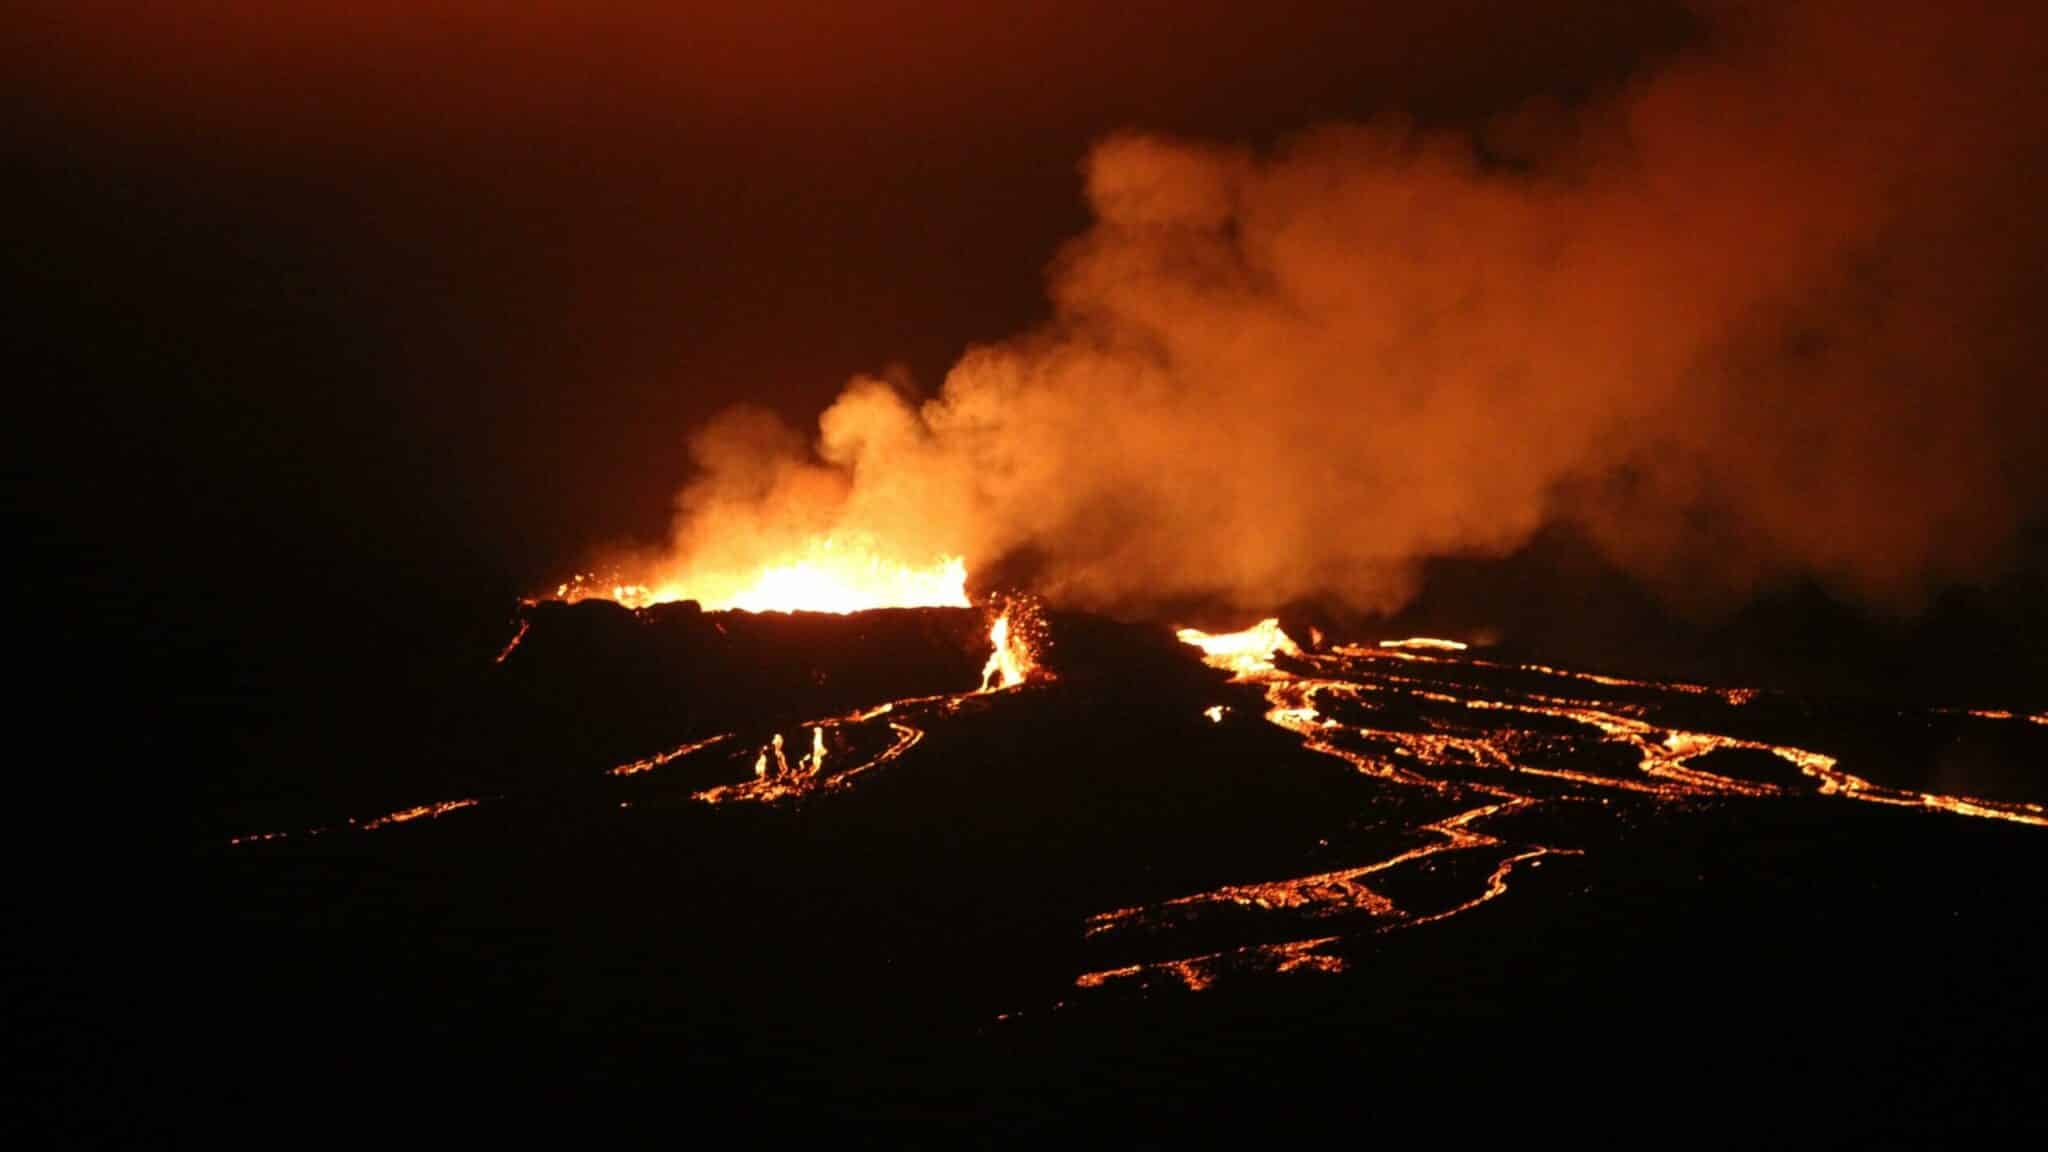 Vulkanausbruch in Island: Meine Erfahrungen am Fagradalsfjall im August 2021